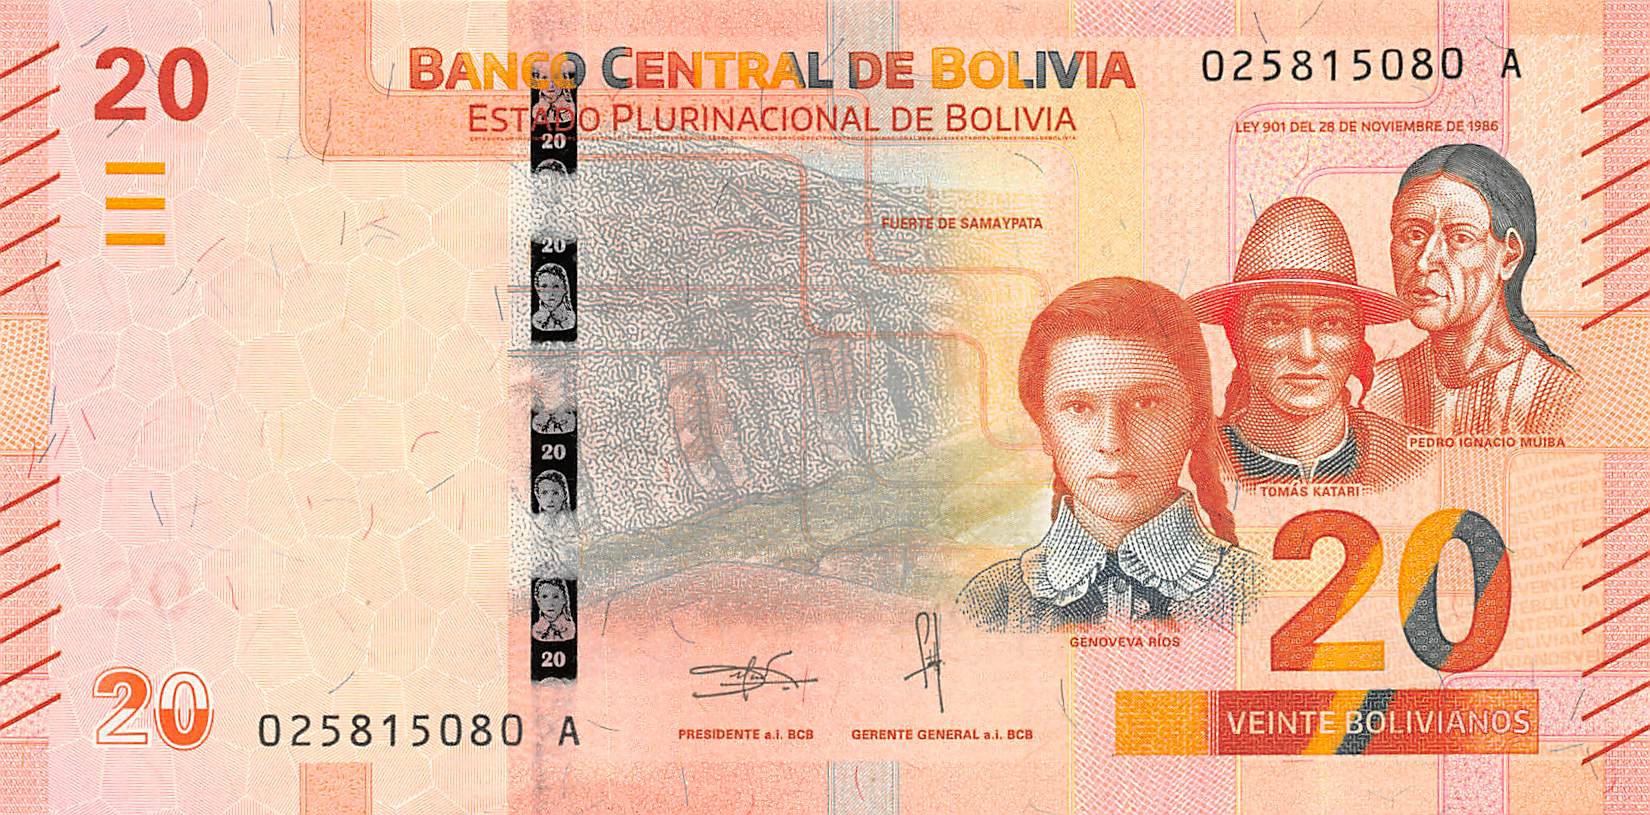 SET 2018 BOLIVIA 10 20 50 BOLIVIANOS P-NEW UNC> > > > > > > > > > >COLORFUL SET 